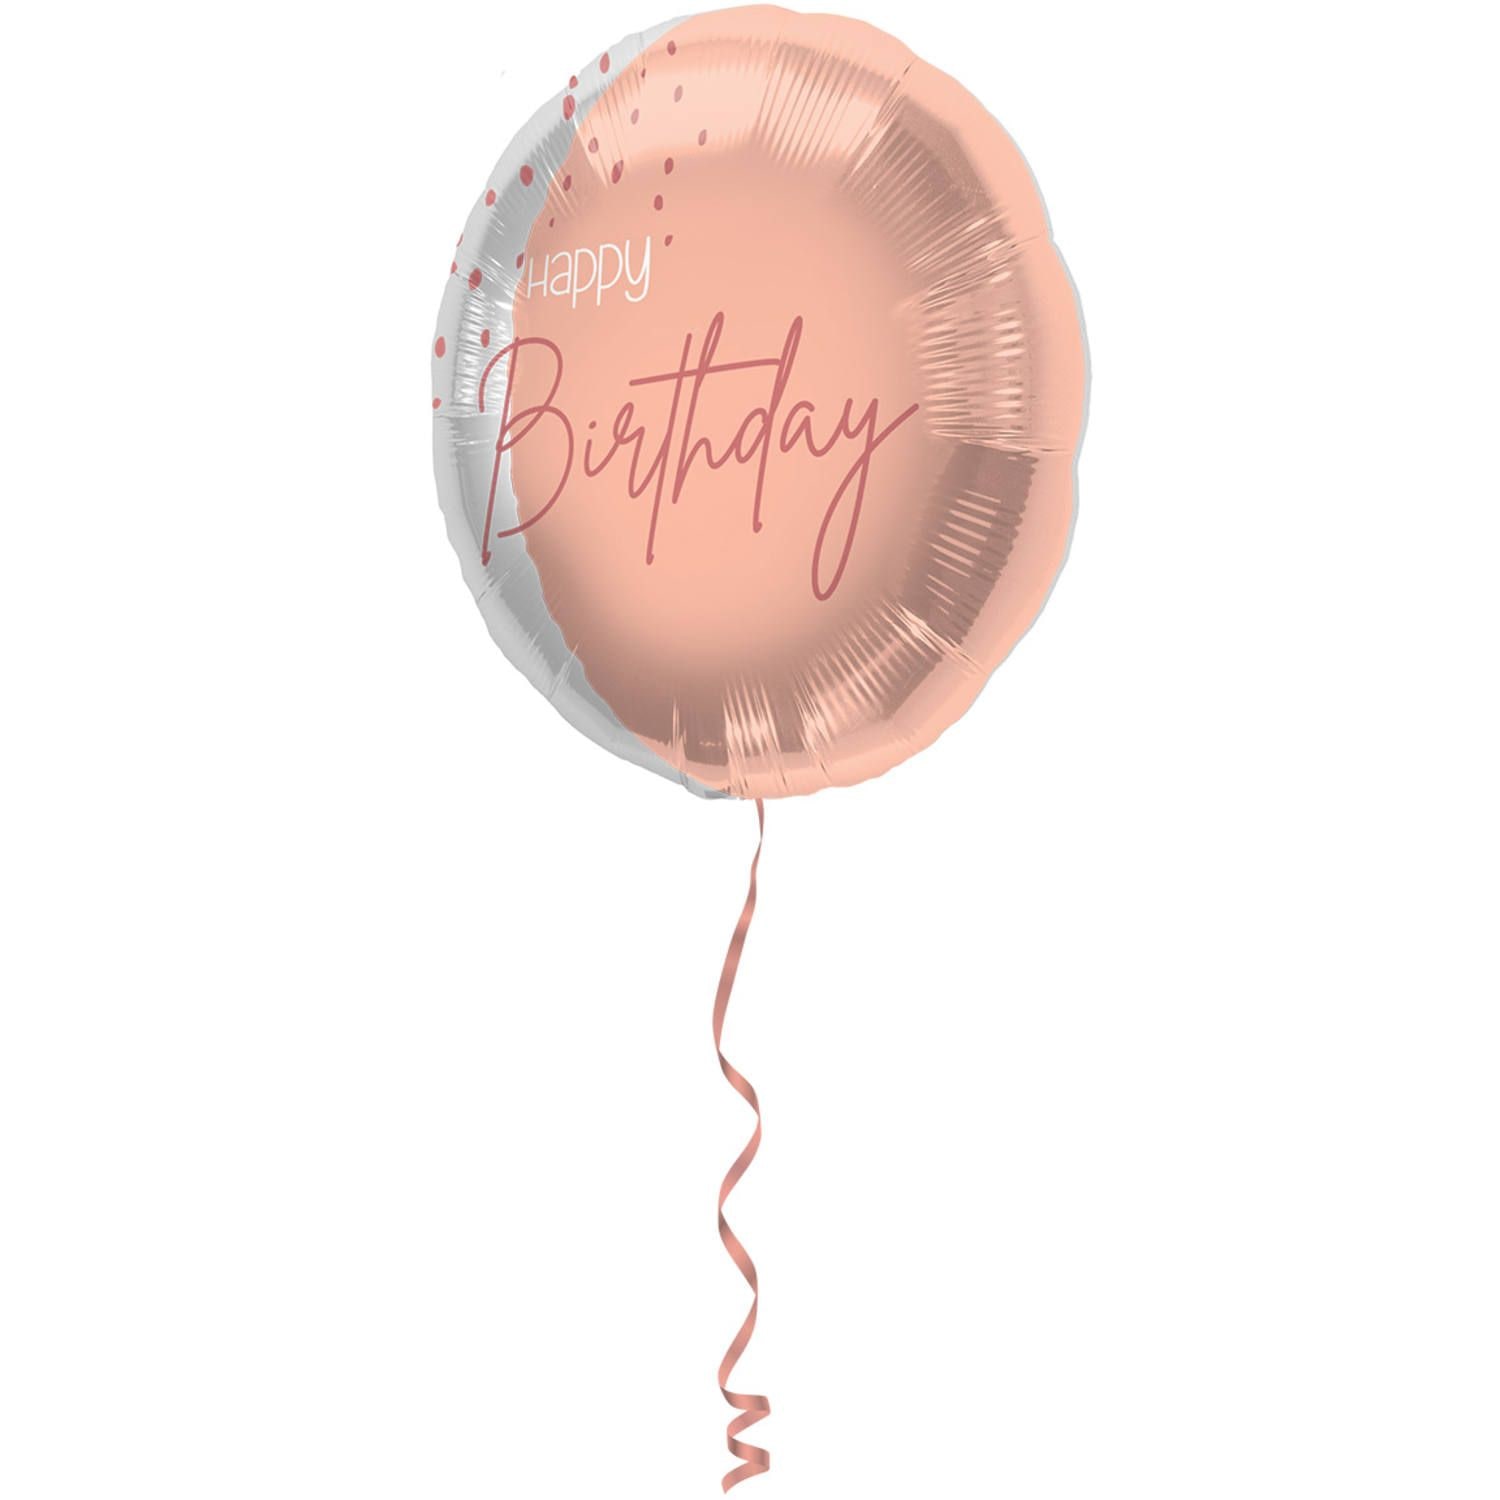 Folieballon elegant lush blush birthday